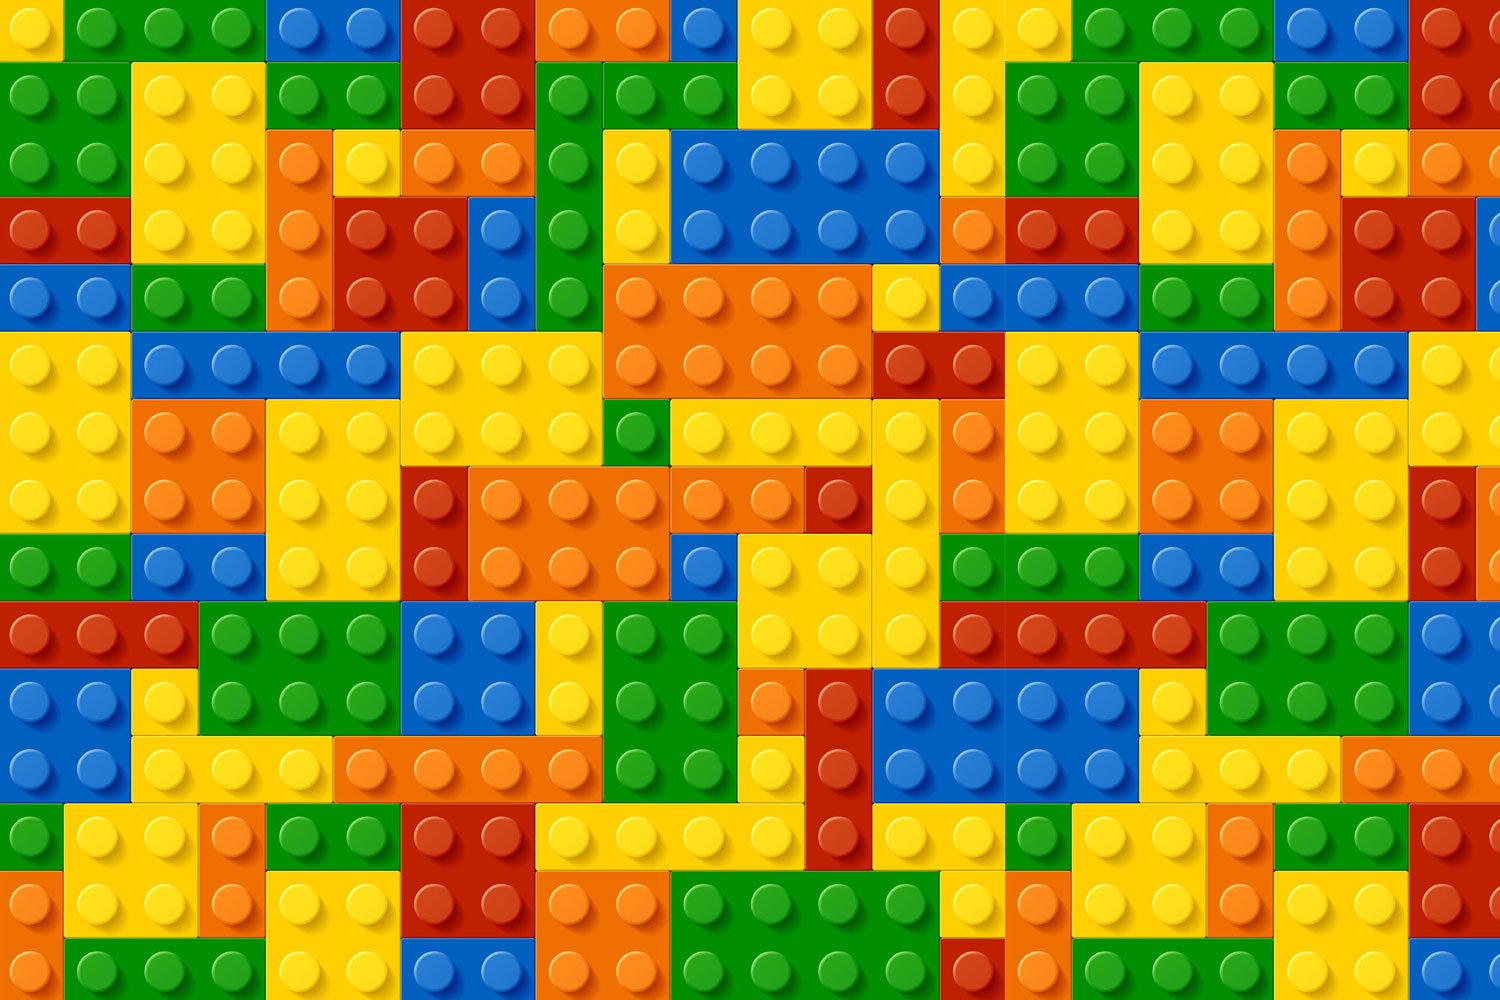 Lego Blocks. Print A Wallpaper